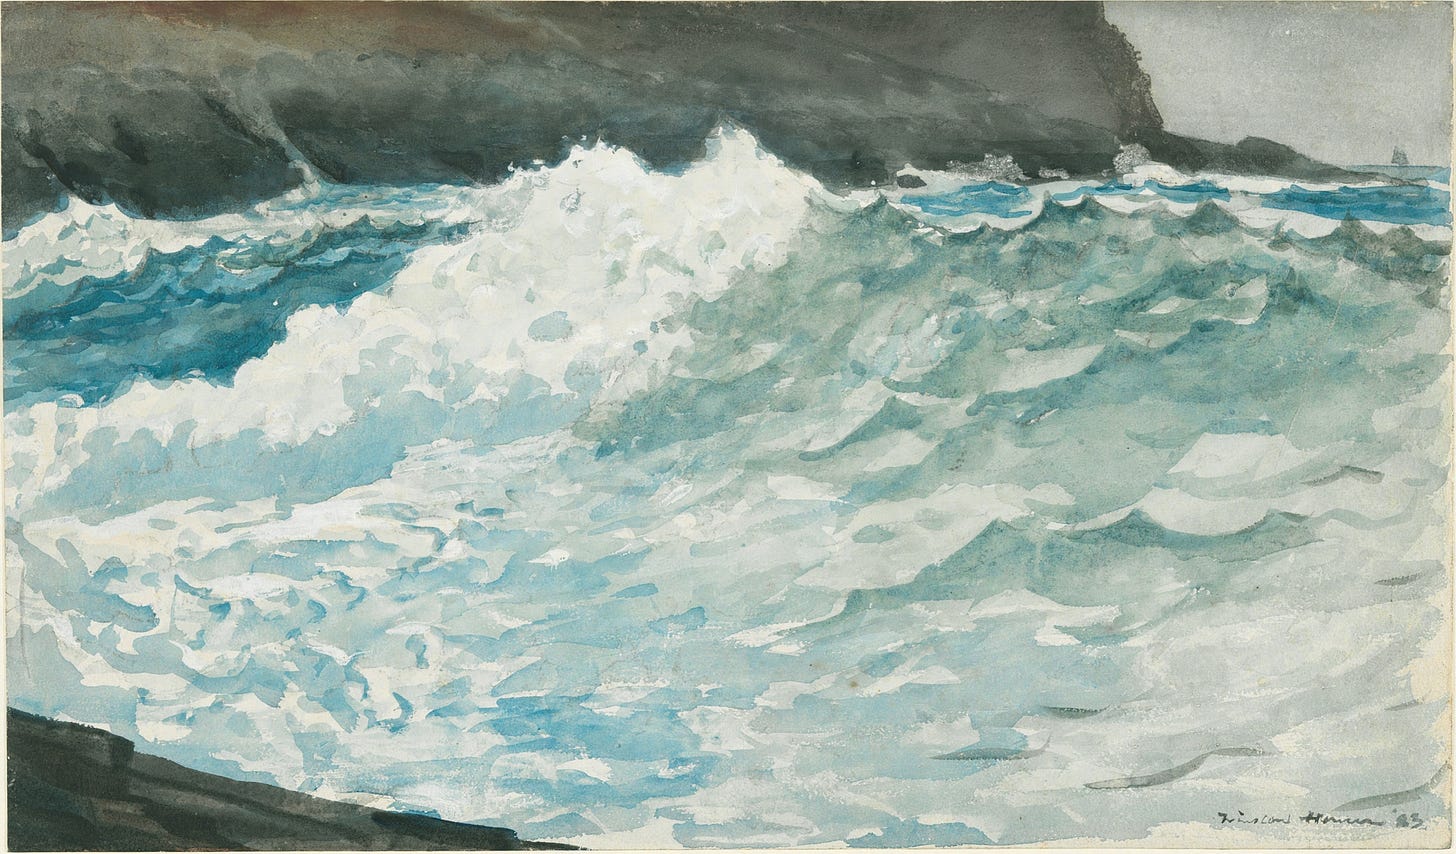 Surf, Prout’s Neck (1883)